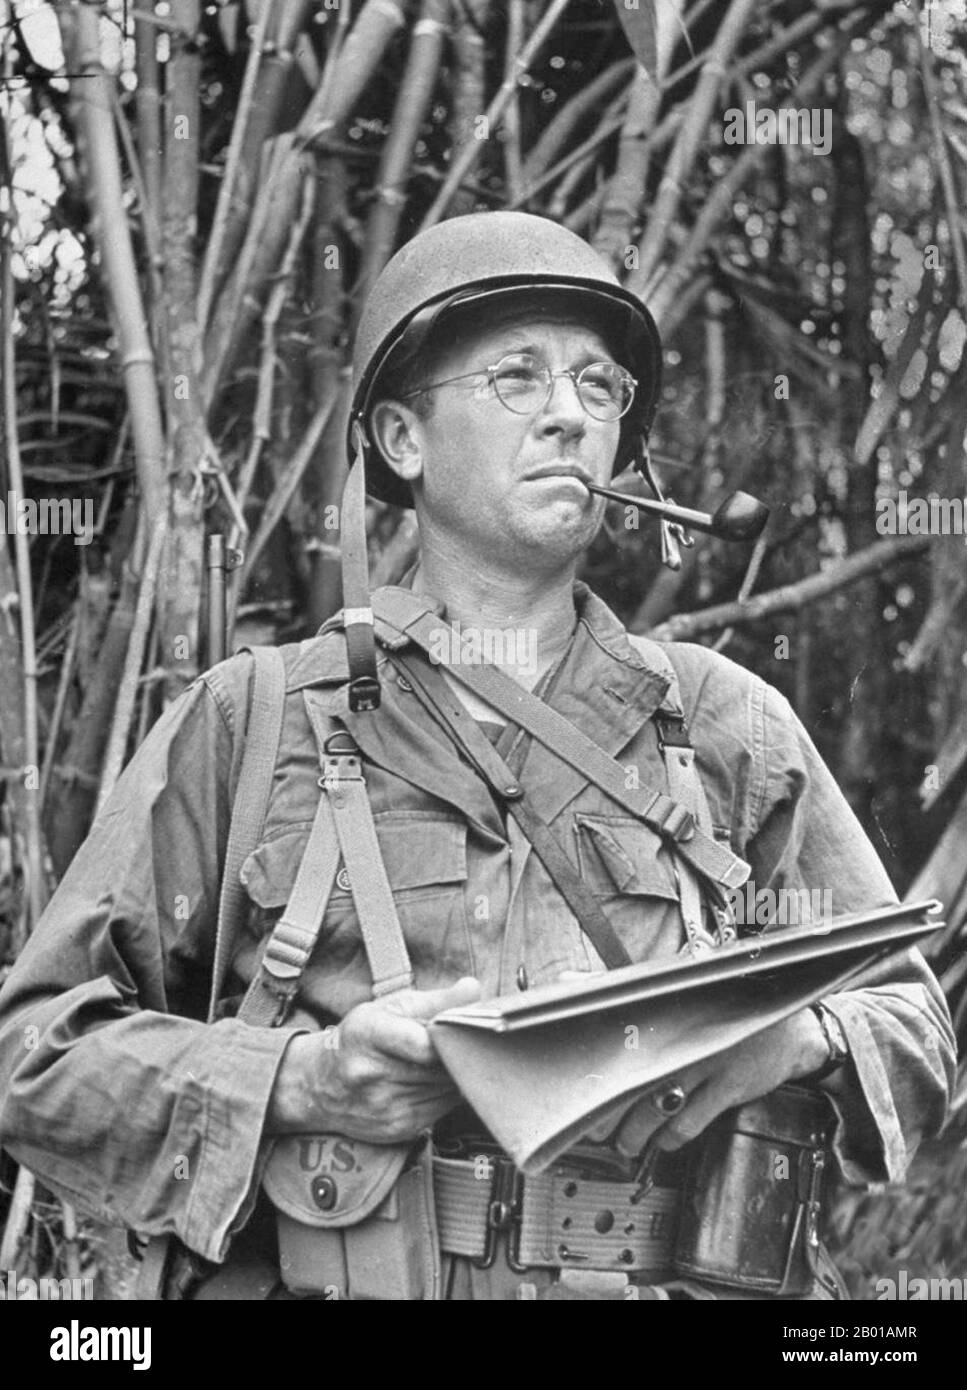 Birmanie/Myanmar/Etats-Unis: Frank Merrill (4 décembre 1903 - 11 décembre 1955) de la renommée de 'Merrill's Marauders', officier allié au théâtre Chine-Birmanie-Inde, Seconde Guerre mondiale (1903-1955), ch. 1944. Frank Dow Merrill est surtout rappelé pour son commandement des Marauders de Merrill, officiellement l'unité composite 5307th (provisoire), dans la campagne birmane de la Seconde Guerre mondiale Les Marauders de Merrill sont arrivés sous le commandement du secteur de combat du Nord du général Joseph Stilwell. Il s'agissait d'une unité de forces spéciales modélisée sur le modèle des groupes de pénétration à longue portée des Chindits formés pour fonctionner à partir de bases situées derrière les lignes japonaises. Banque D'Images